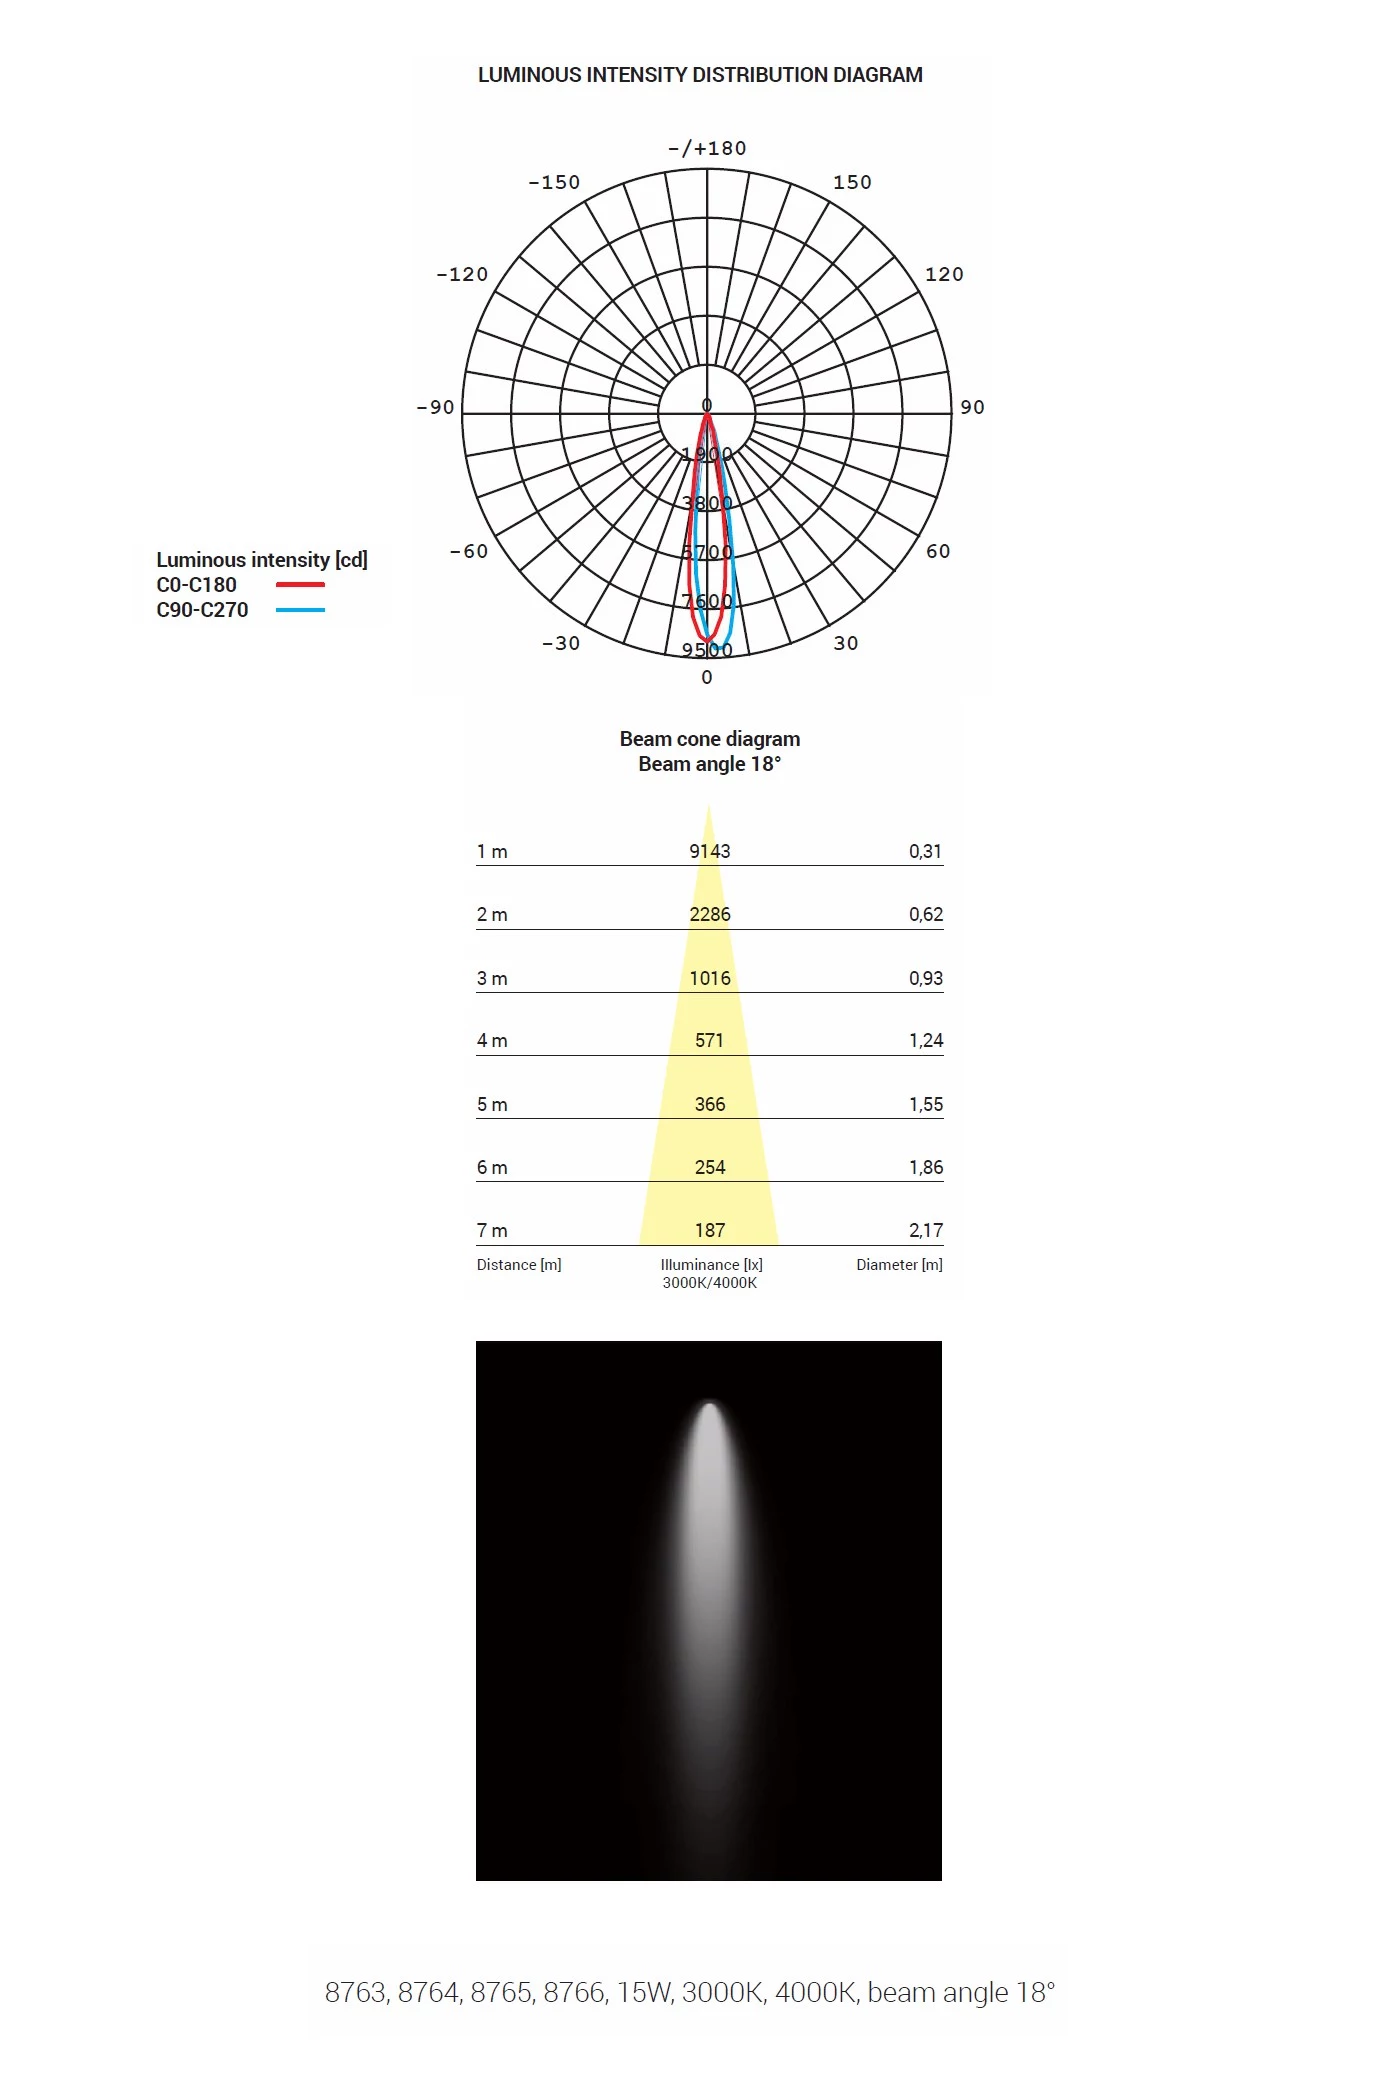   
                        Трековий світильник NOWODVORSKI (Польща) 30374    
                         у стилі хай-тек.  
                        Тип джерела світла: вбудовані світлодіоди led.                                                 Кольори плафонів і підвісок: чорний.                         Матеріал: алюміній.                          фото 4